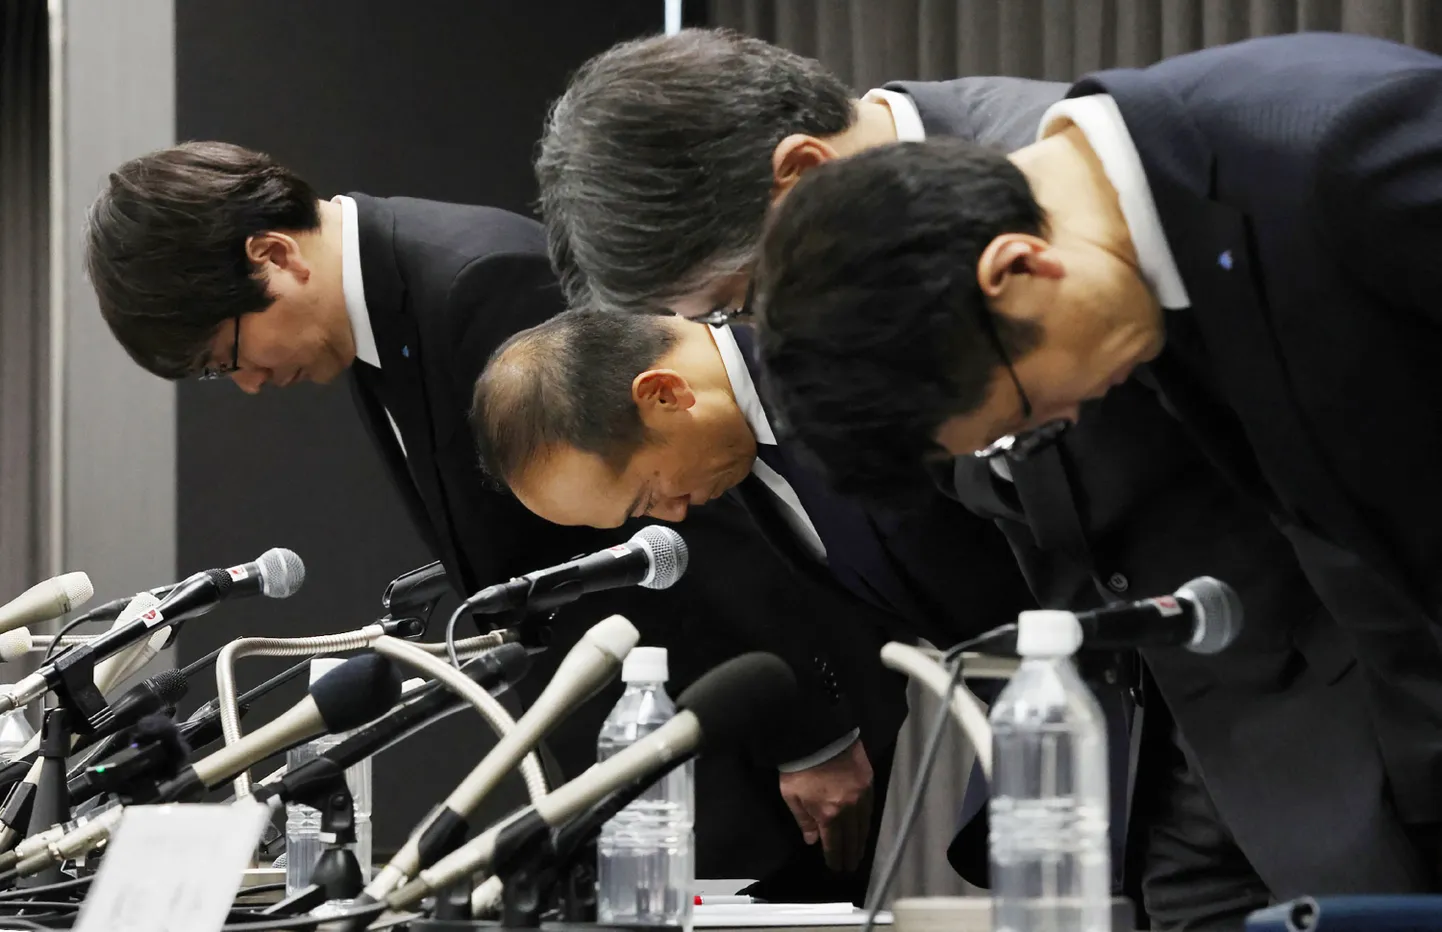 Kobayashi Pharmaceutical Co. president Akihiro Kobayashi ja teised ettevõtte esindajad enne pressikonverentsi.